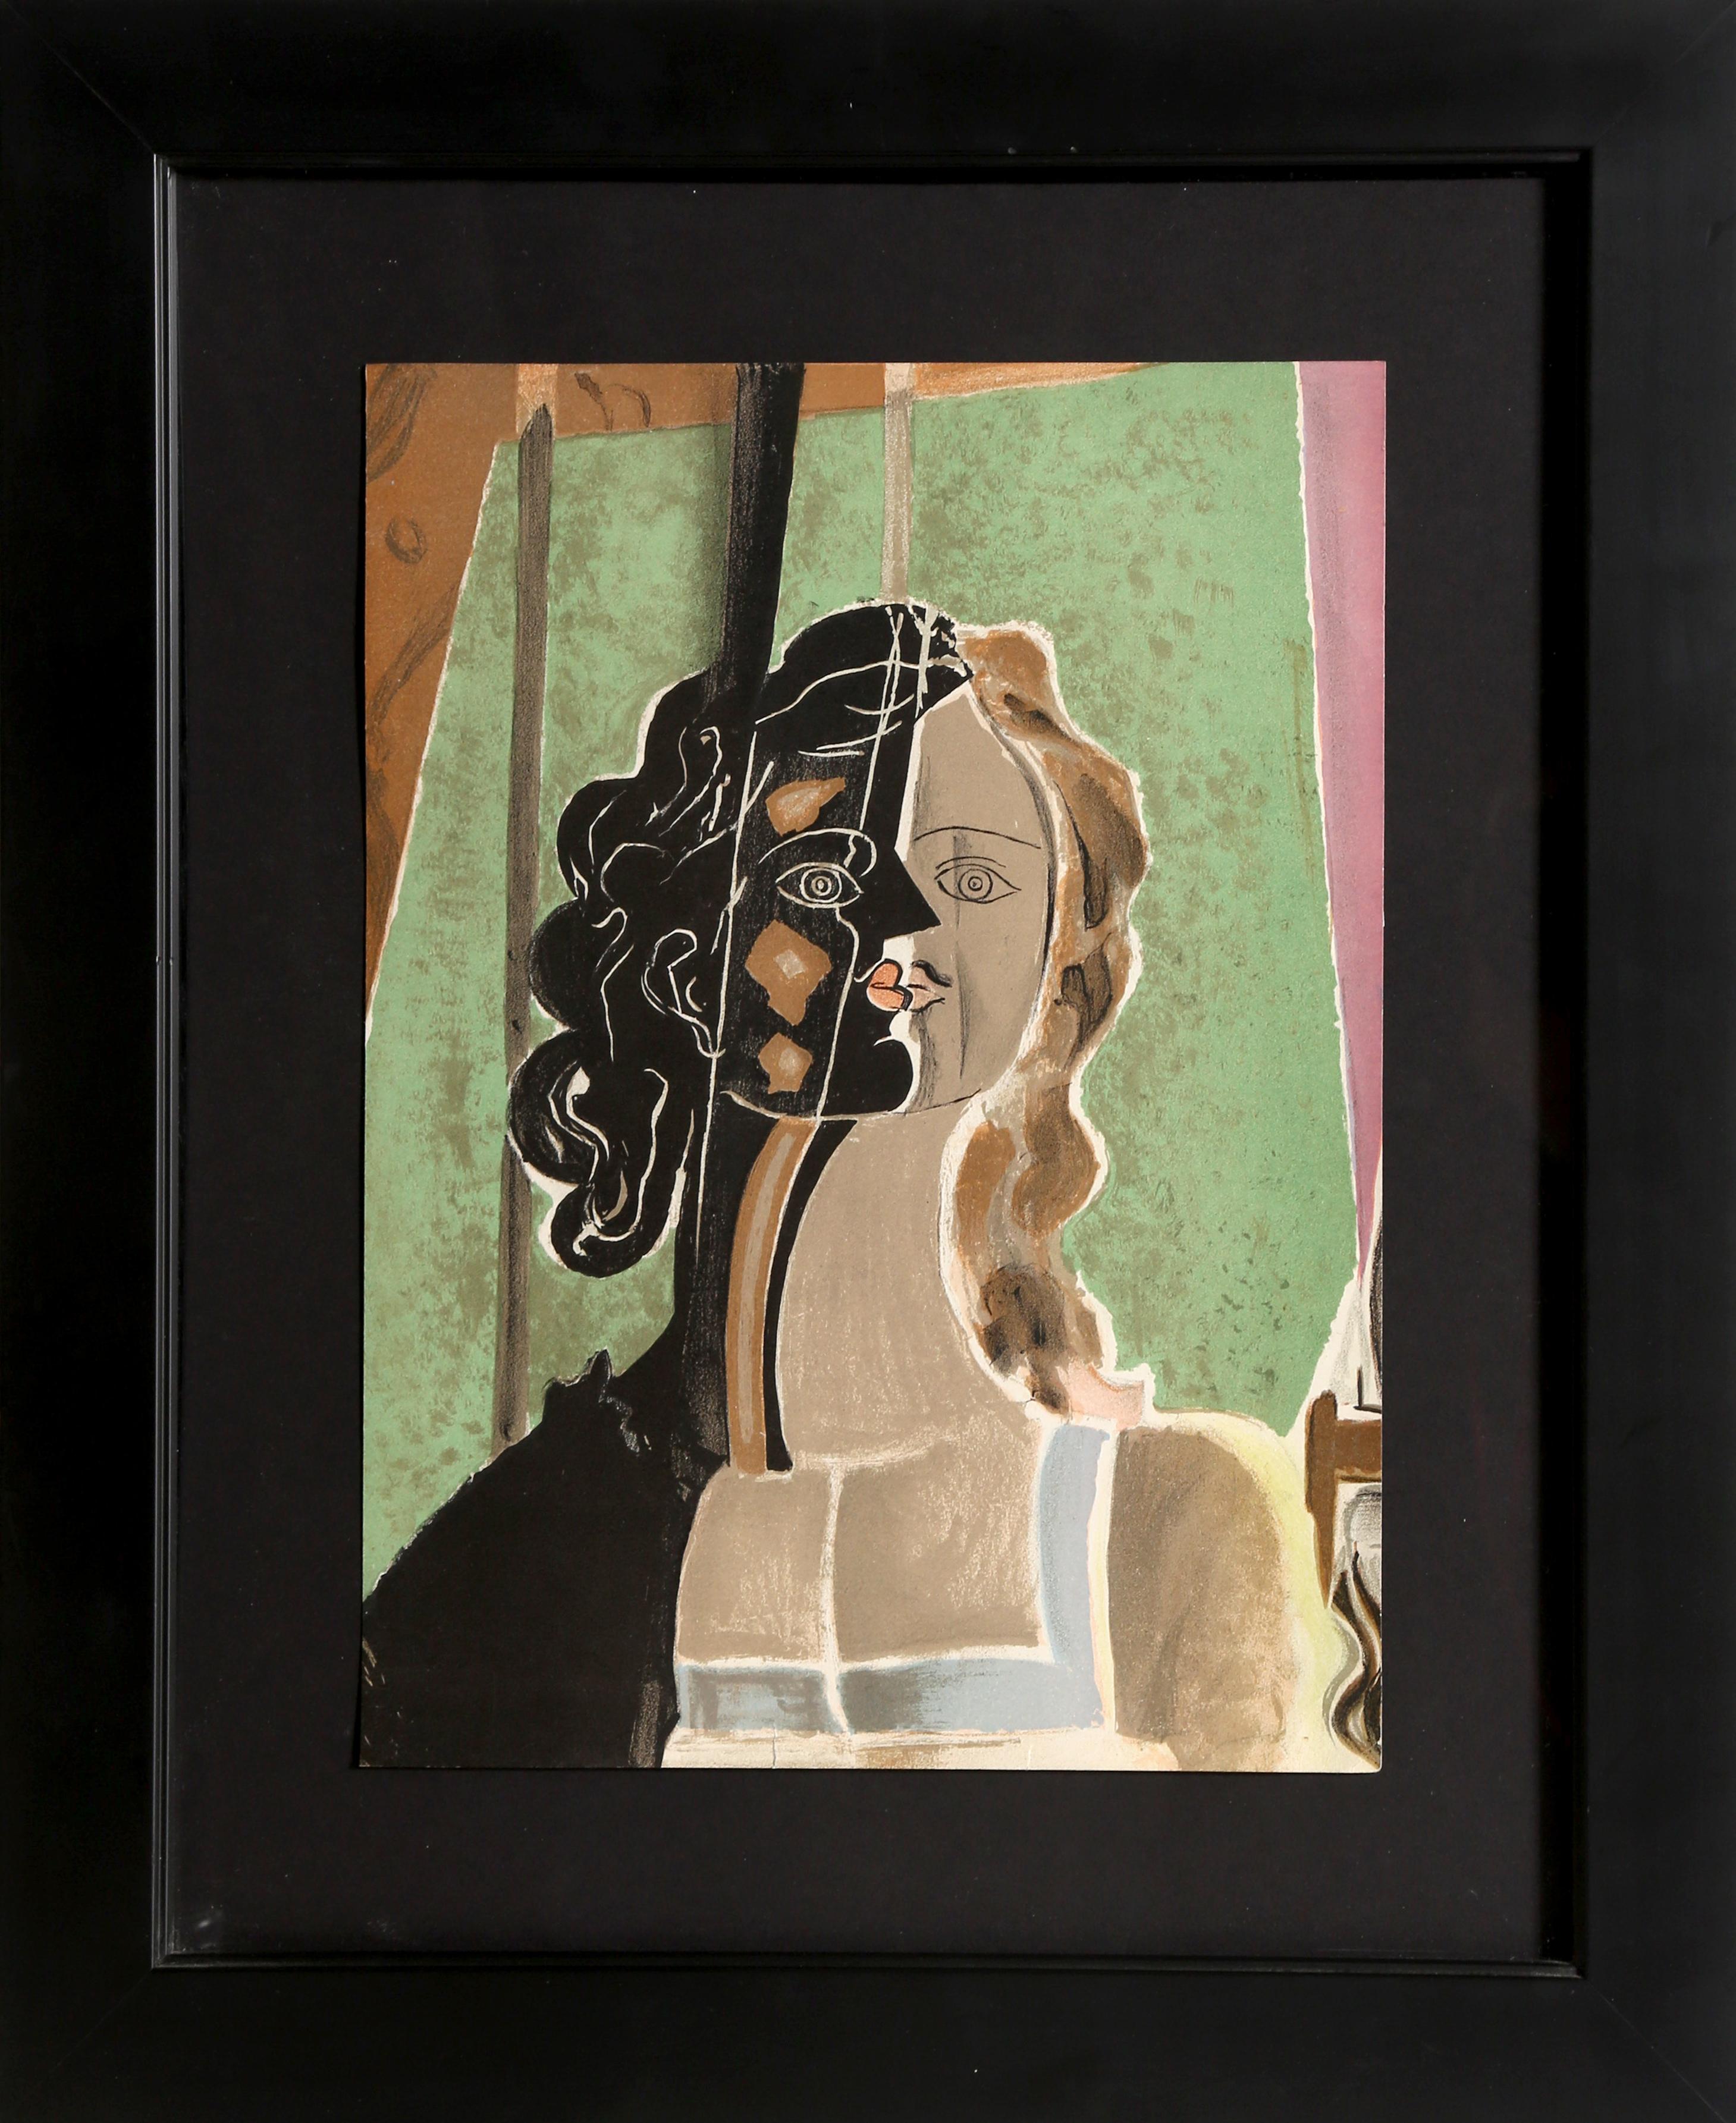 (after) Georges Braque Portrait Print - Figure (Fragment), Cubist Portrait by Georges Braque